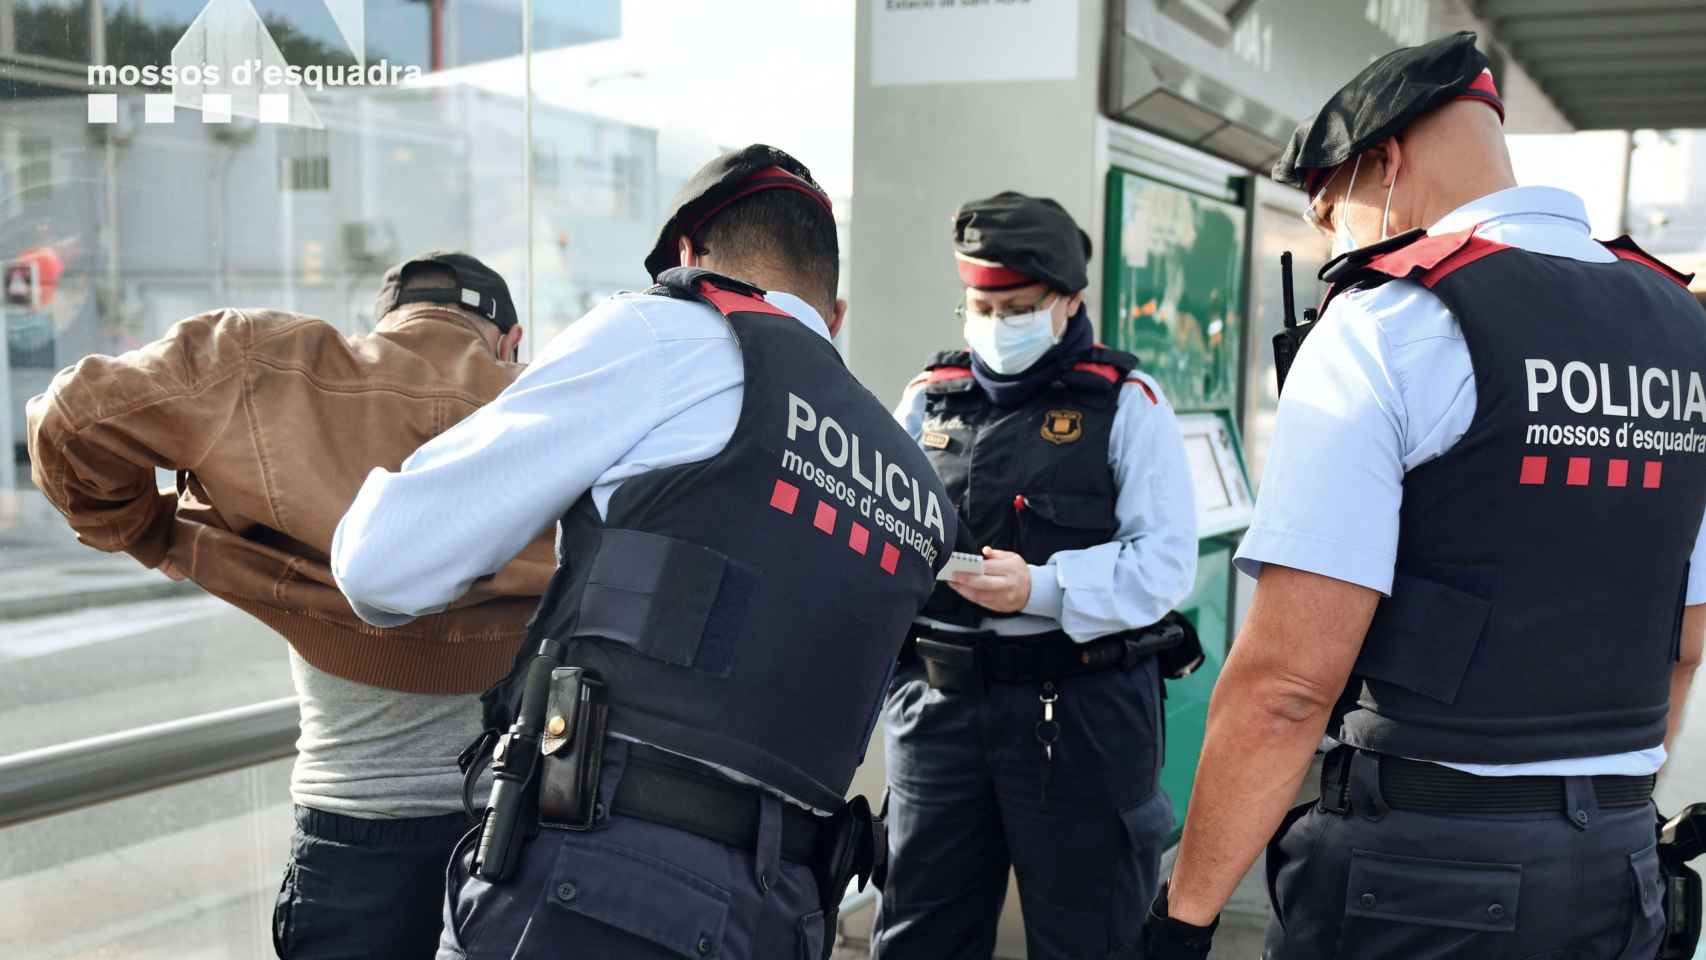 Tres agentes uniformados registran a una persona / MOSSOS D'ESQUADRA